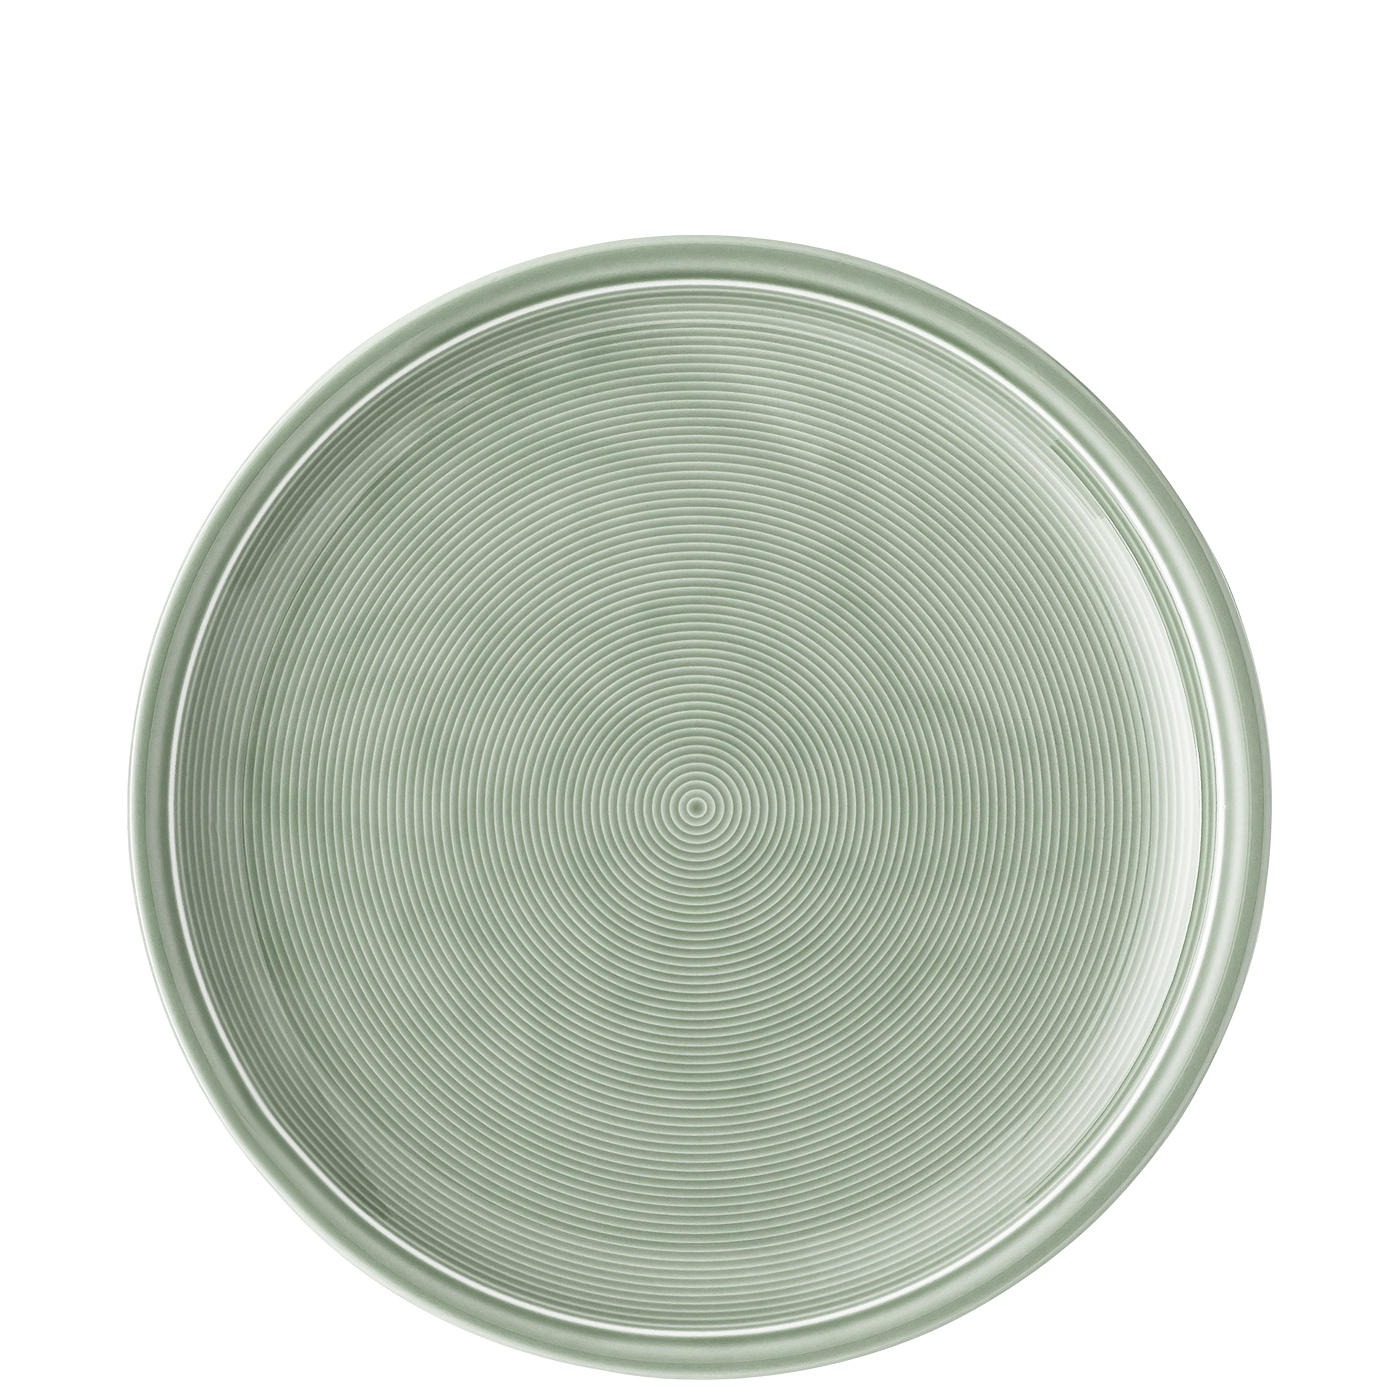 SPEISETELLER MOSS GREEN  - Dunkelgrün, Design, Keramik (28,1/3,1cm) - Thomas